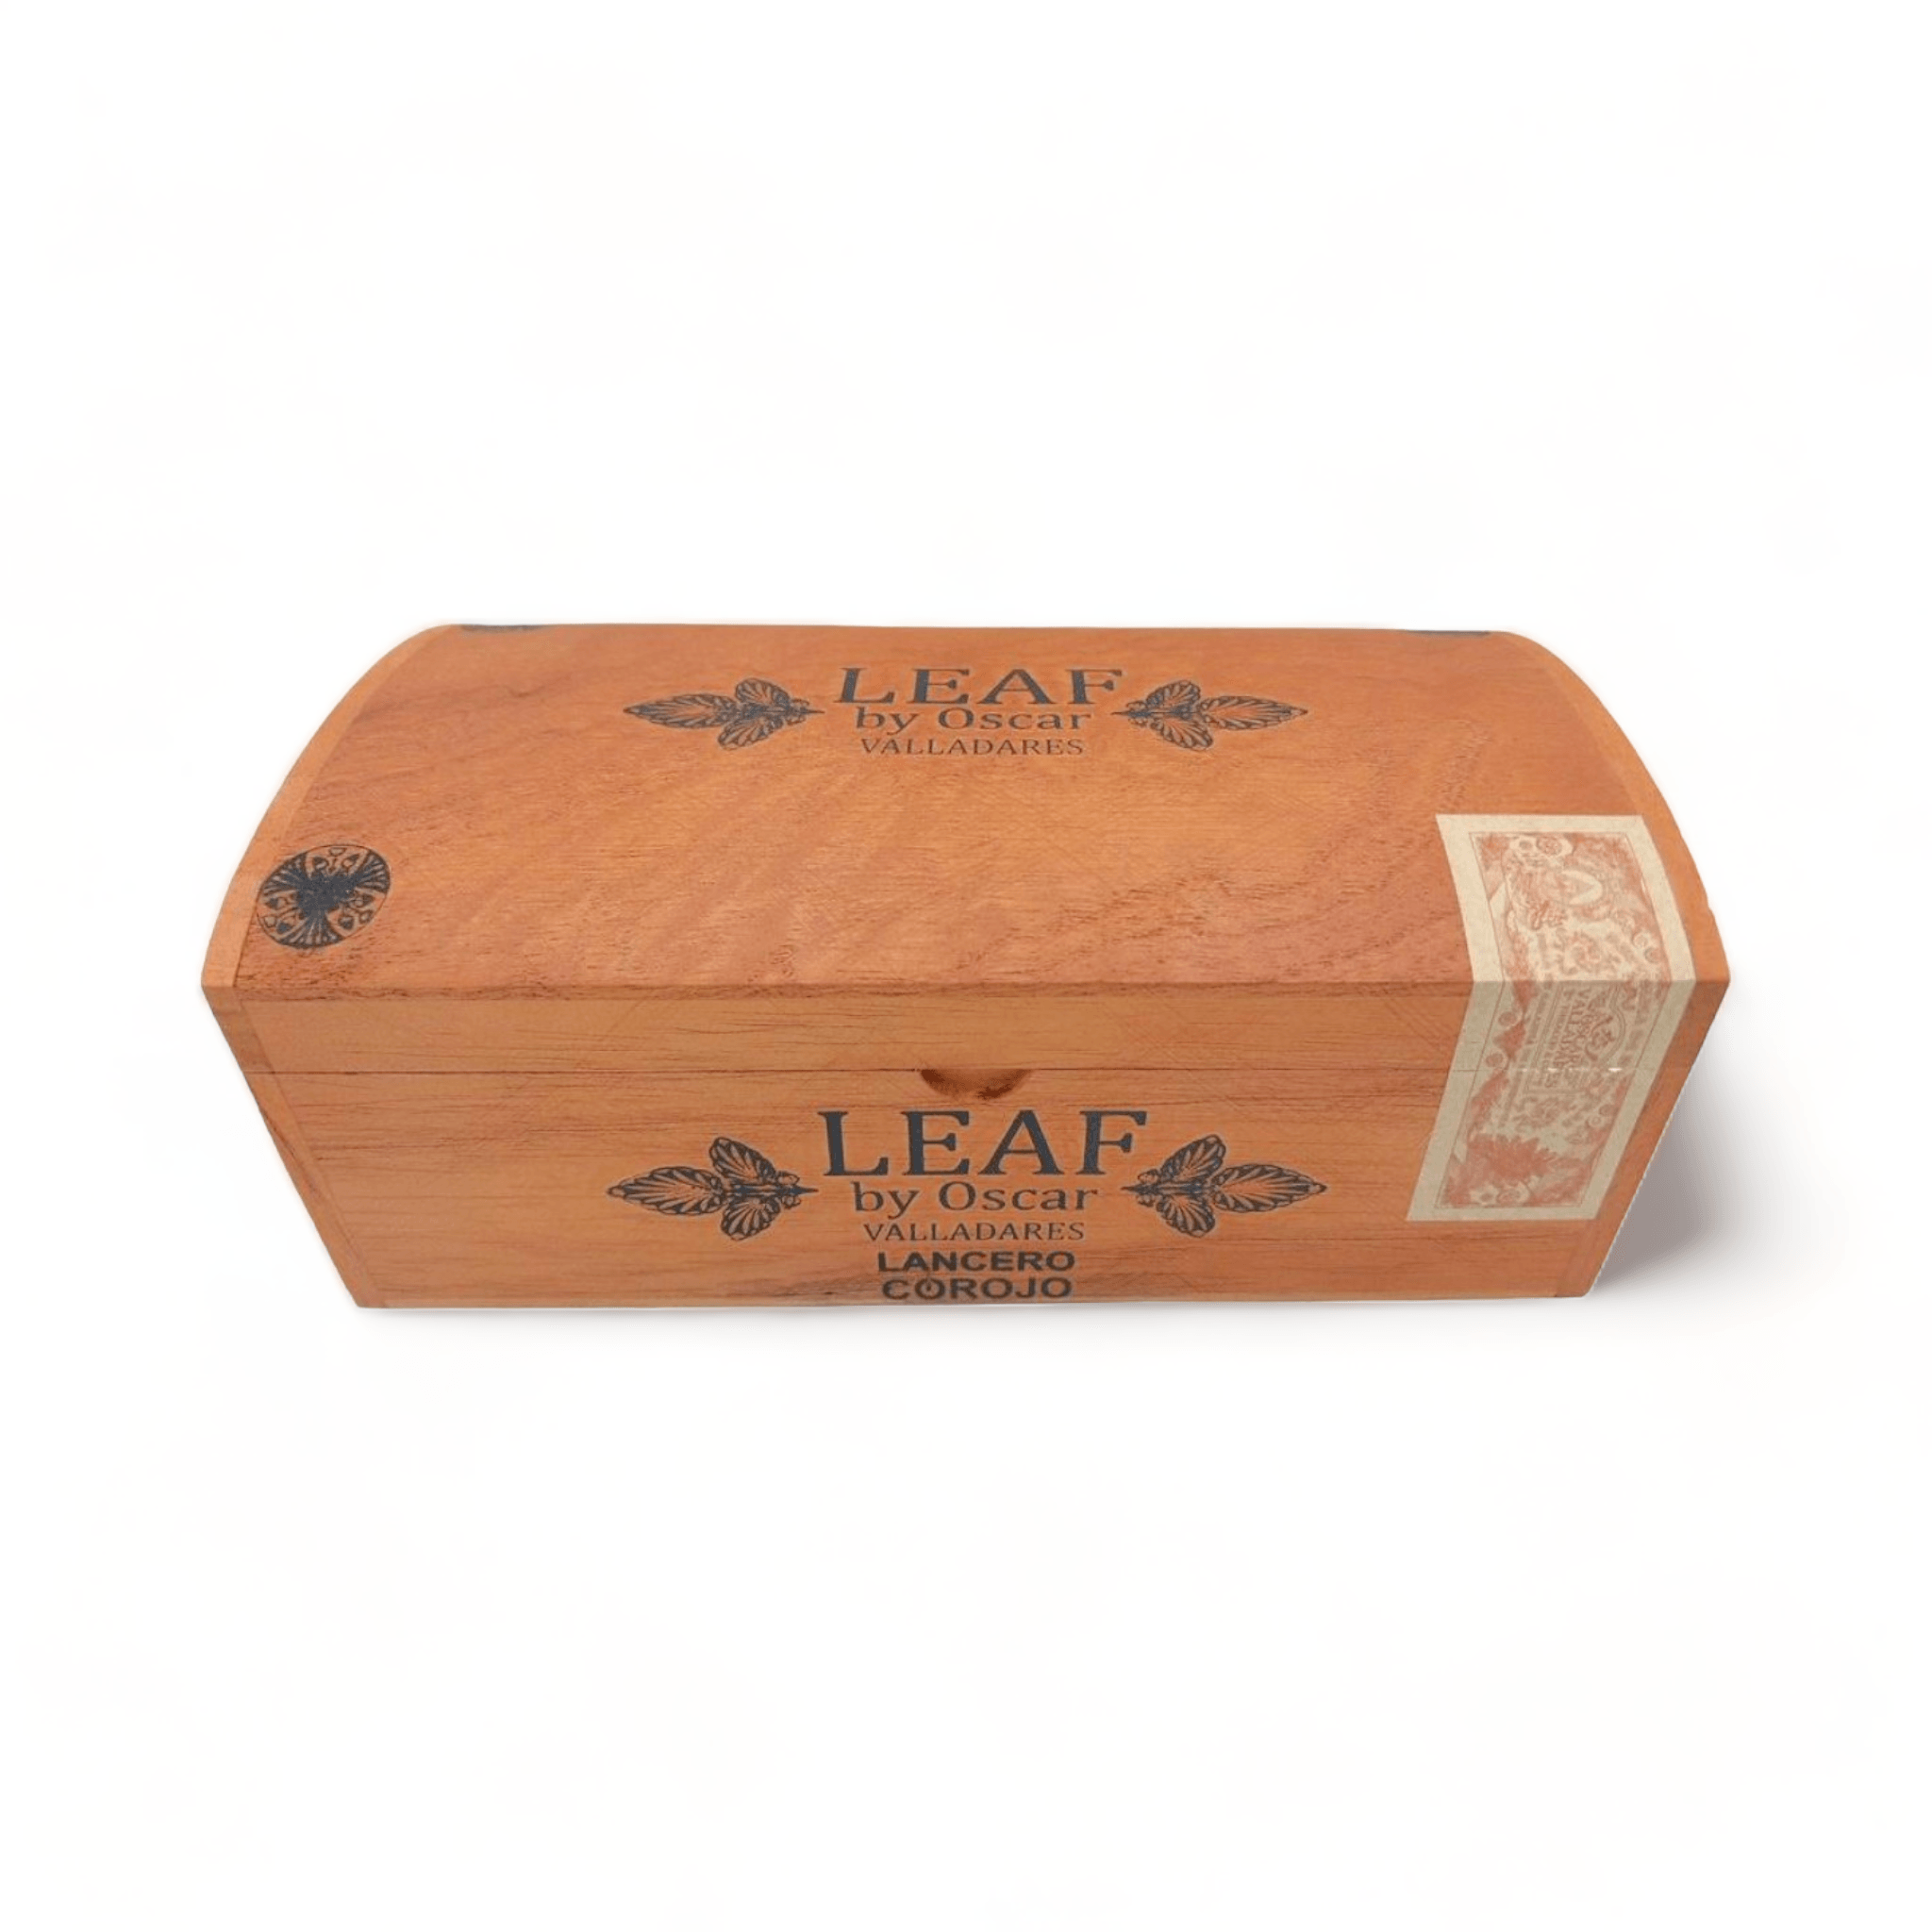 Oscar Valladares Cigars | Leaf Corojo Lancero | Box of 20 - hk.cohcigars